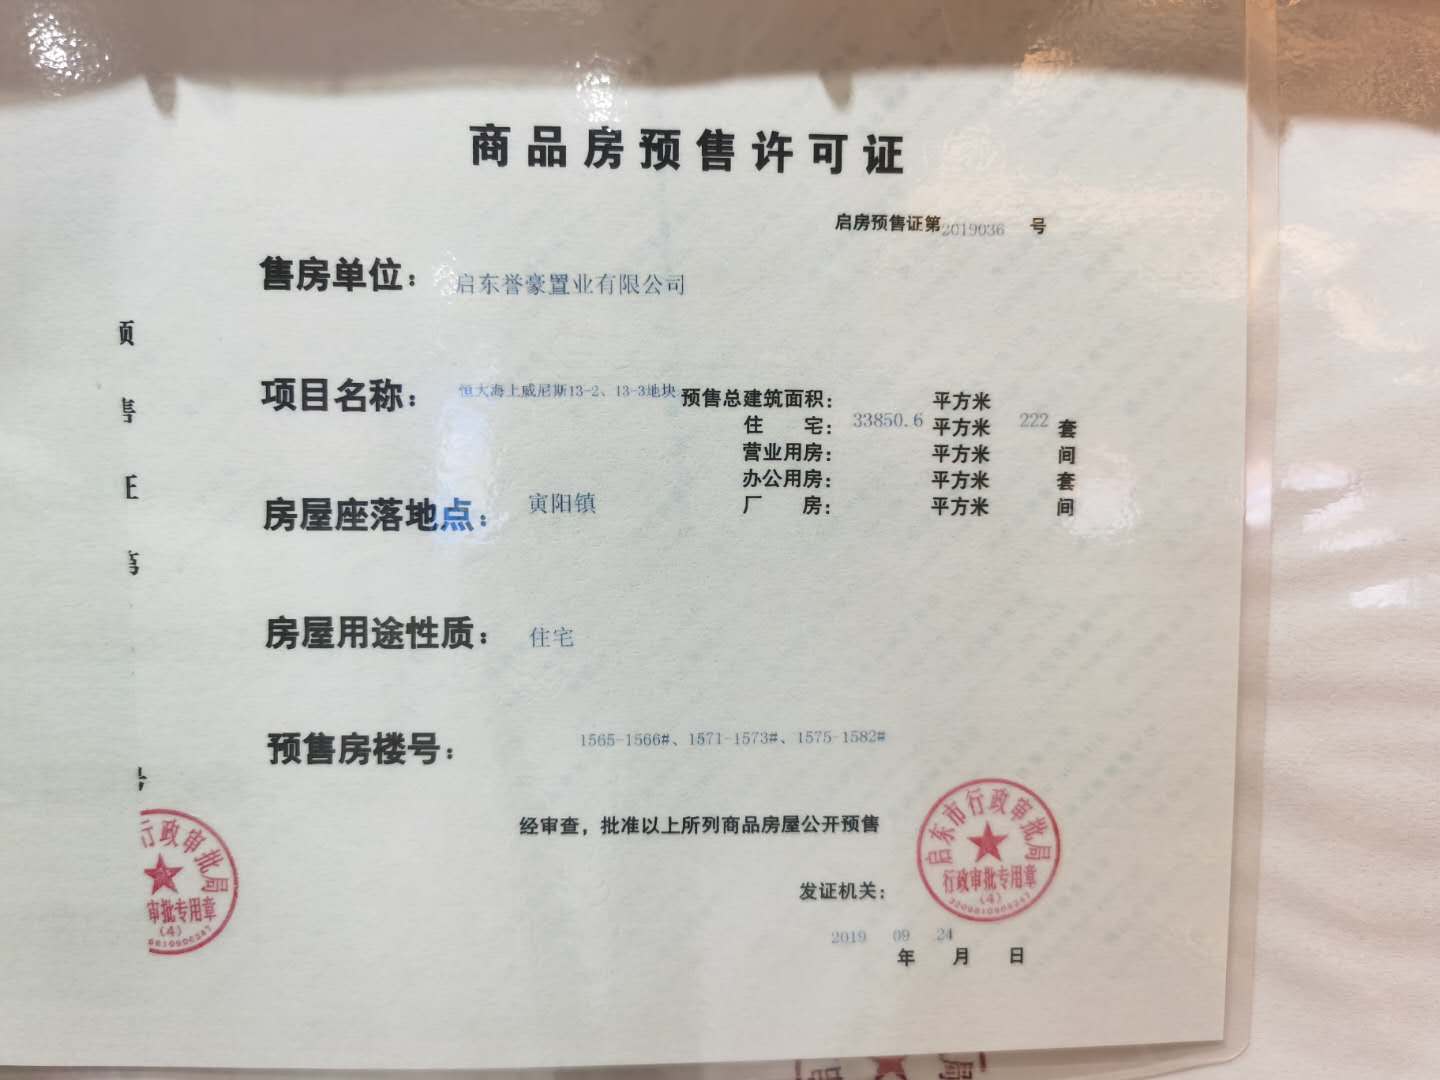 【上海市碧海银沙威尼斯楼盘】房价,户型,开盘时间详情 预售许可证